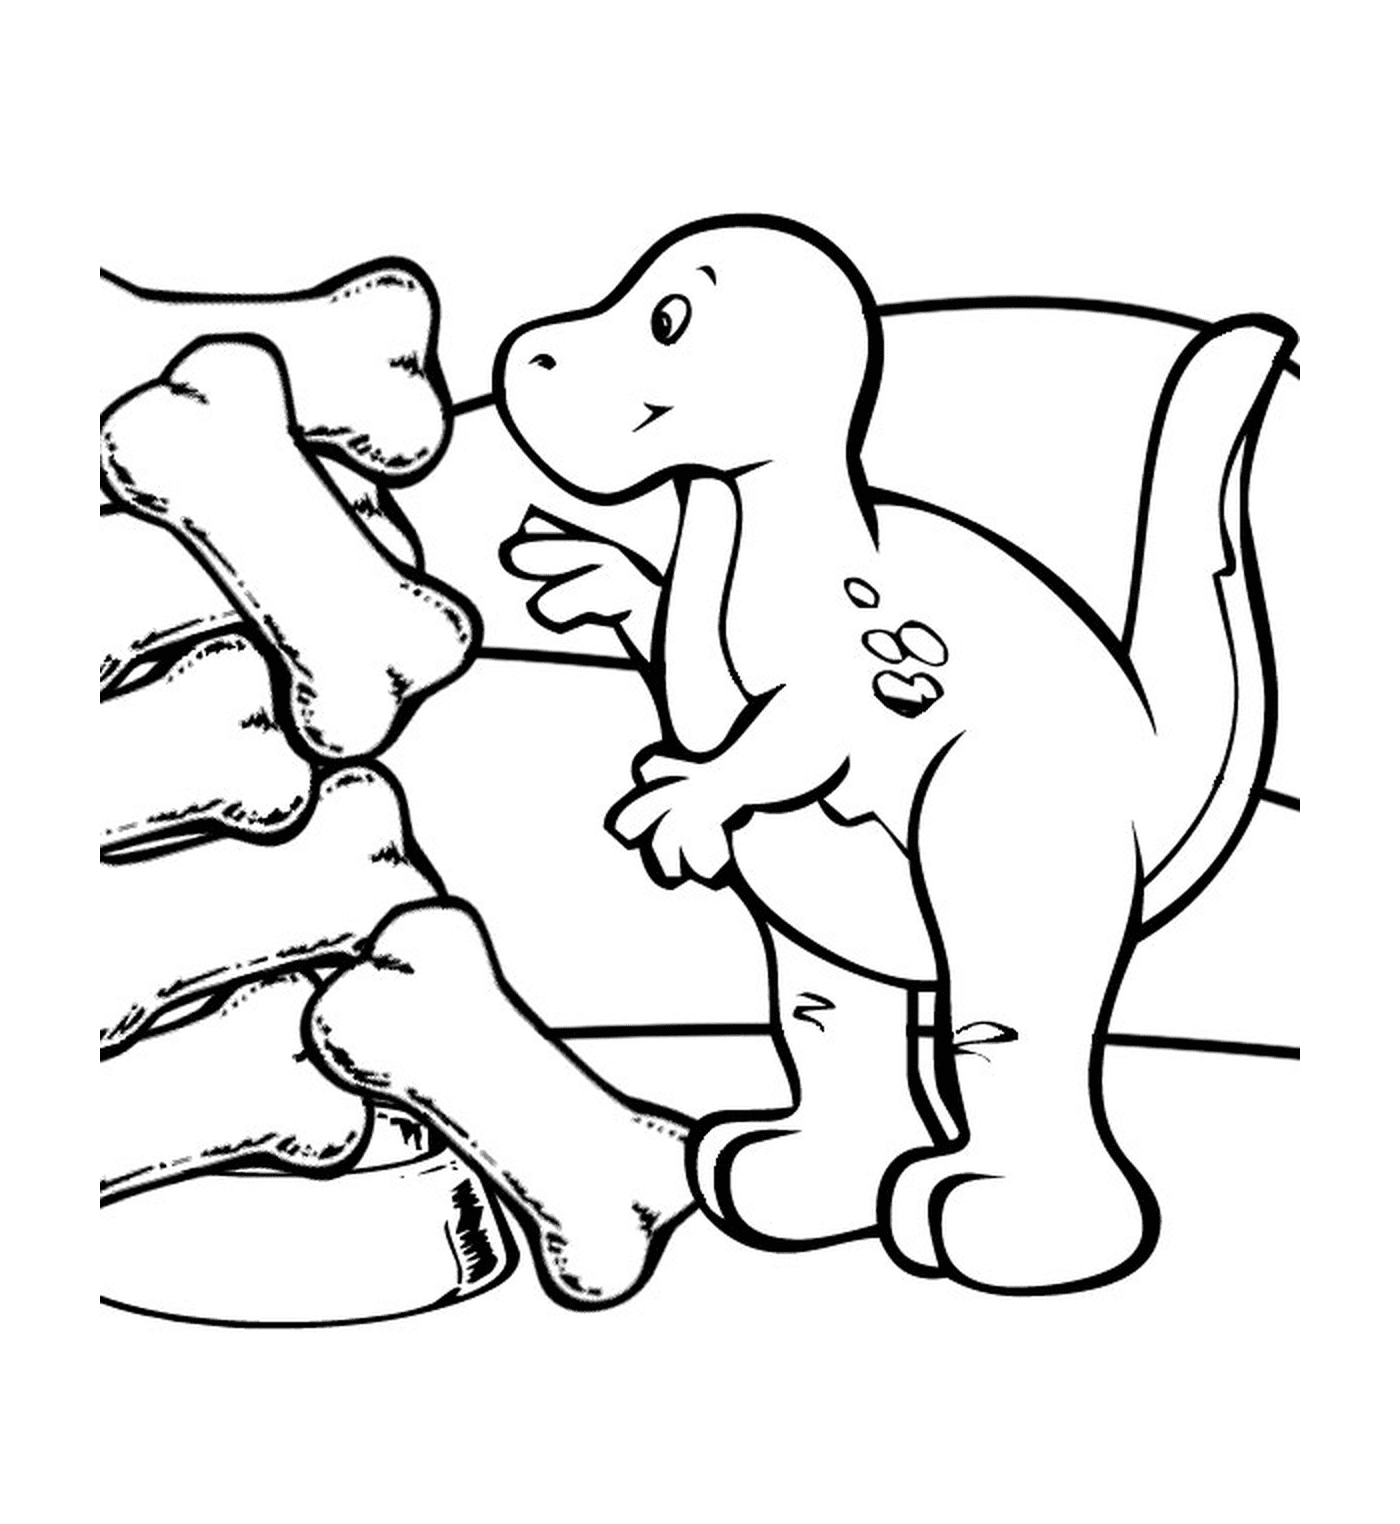  Dinosaurio junto a huesos fosilizados 